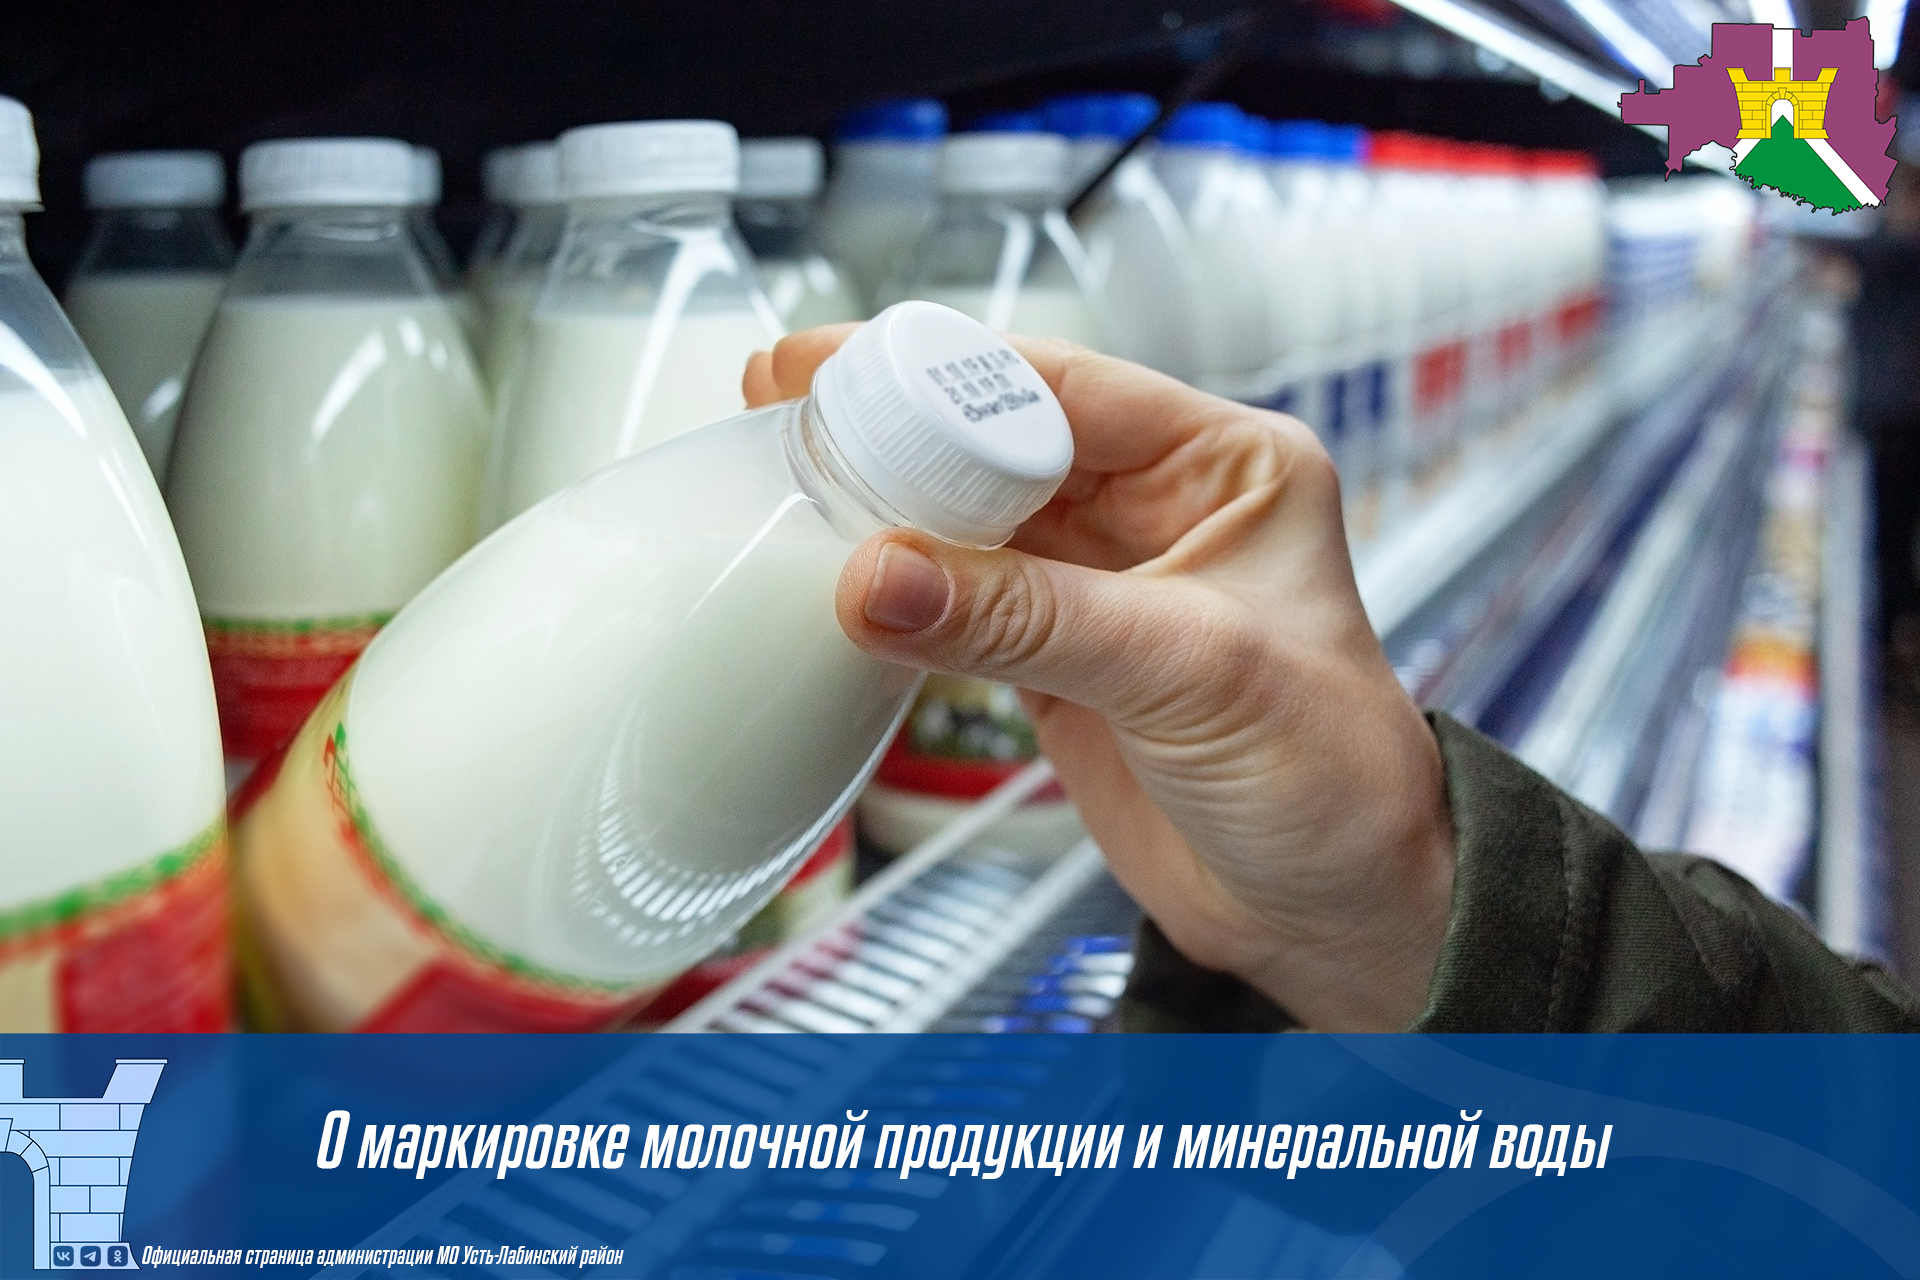 О маркировке молочной продукции и минеральной воды